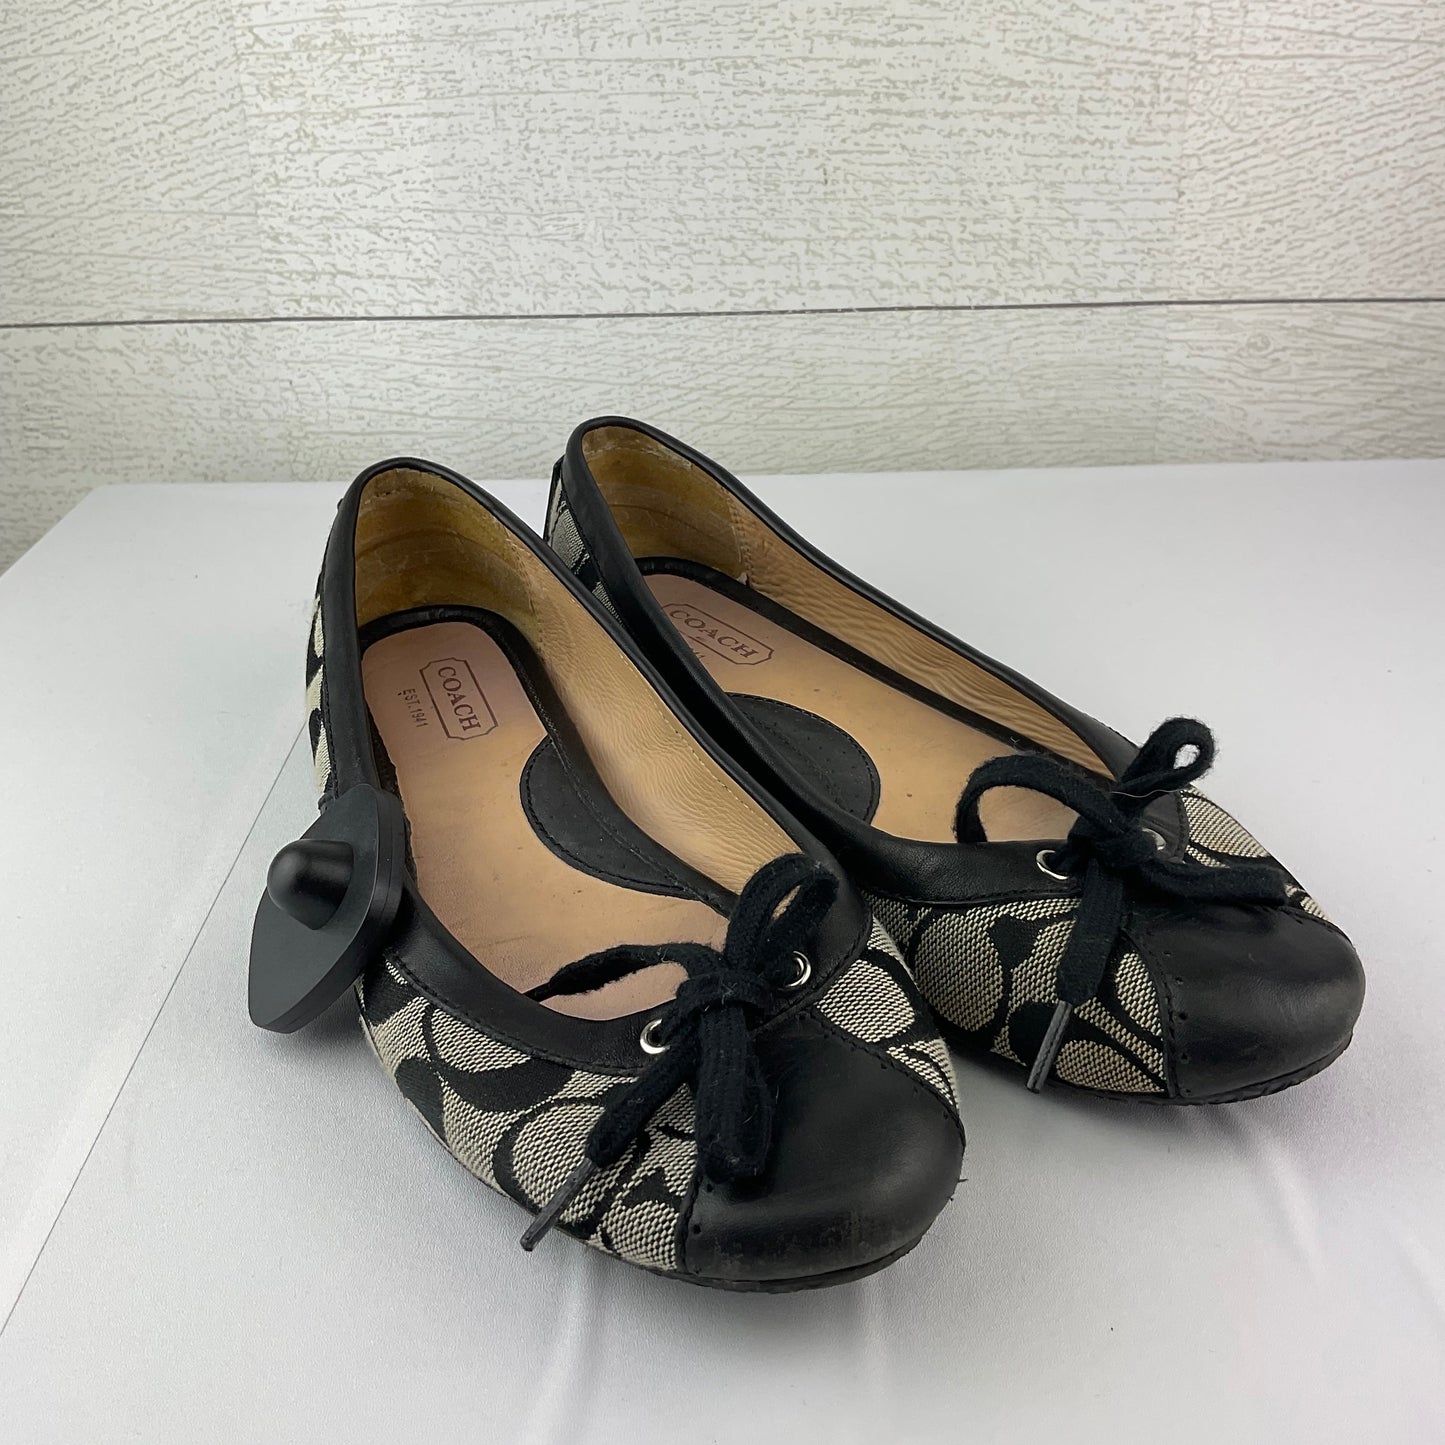 Black & Cream Shoes Flats Coach, Size 8